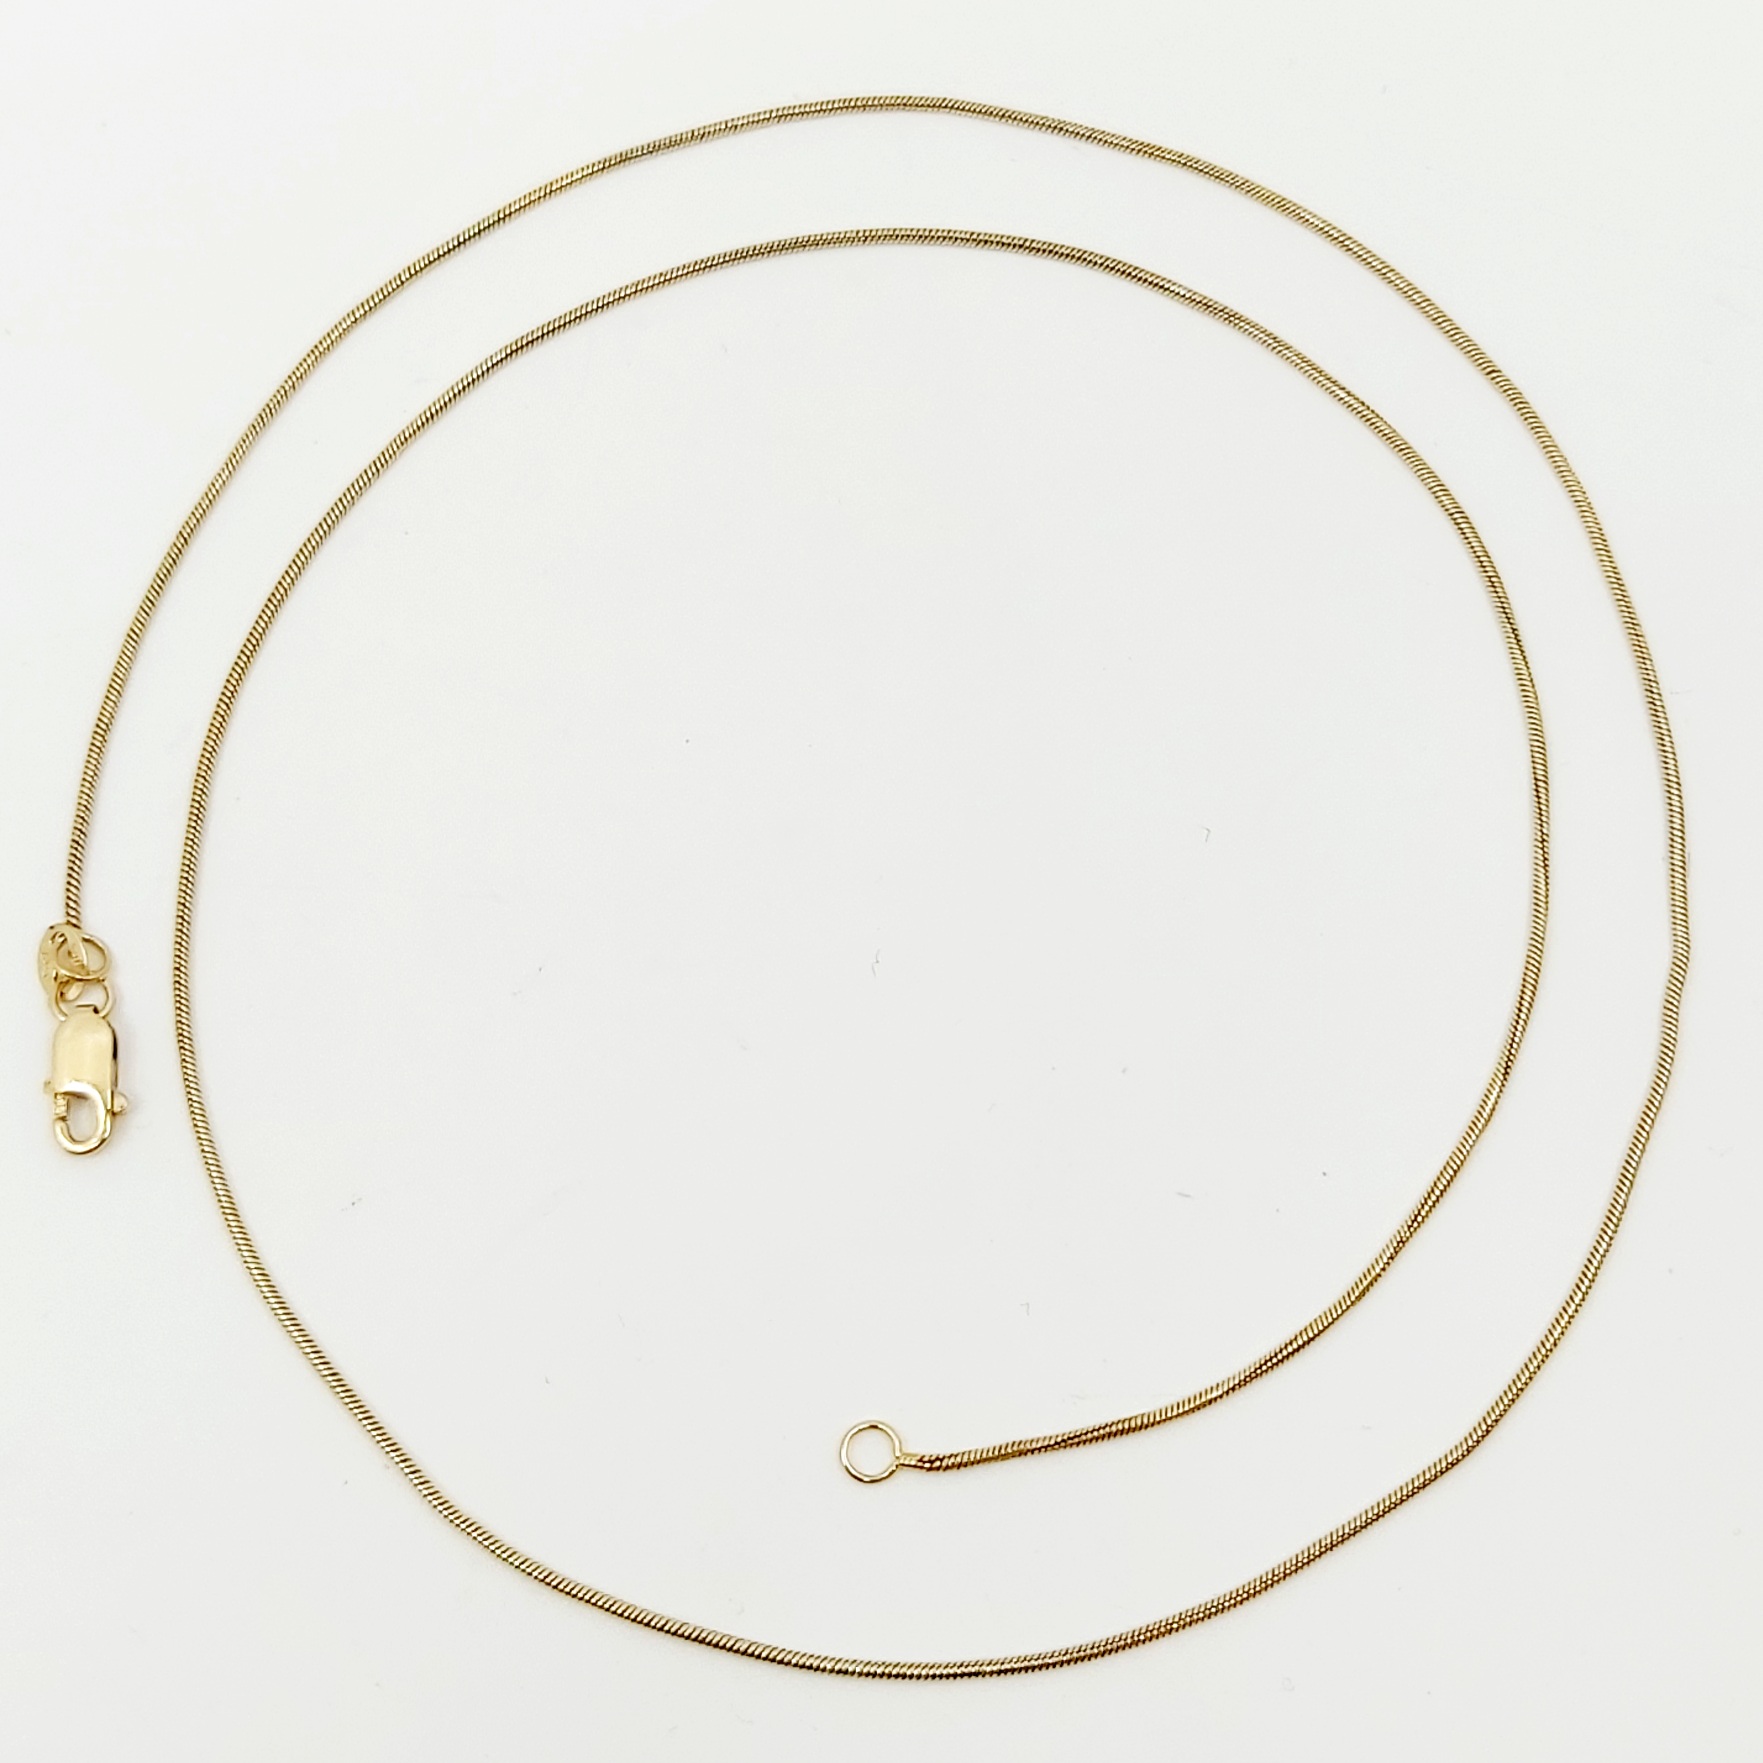 1 Halskette 585/- Länge: 49 cm, 3,05 g